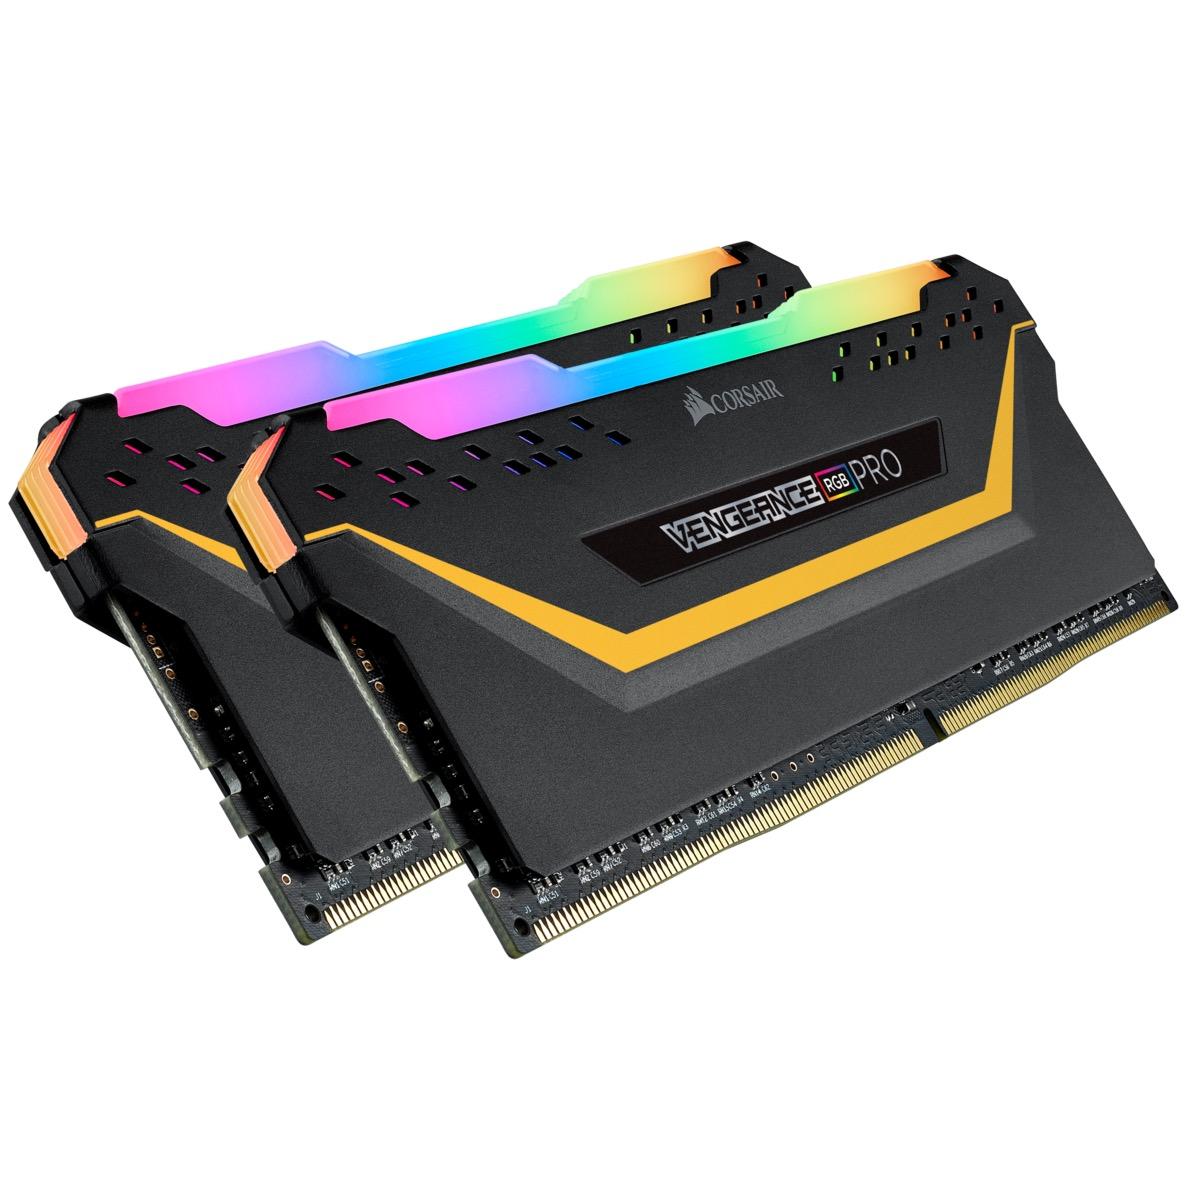 Памет Corsair Vengeance PRO RGB TUF Black 16GB(2x8GB) DDR4 PC4-25600 3200MHz CL16 CMW16GX4M2C3200C16-TUF-3